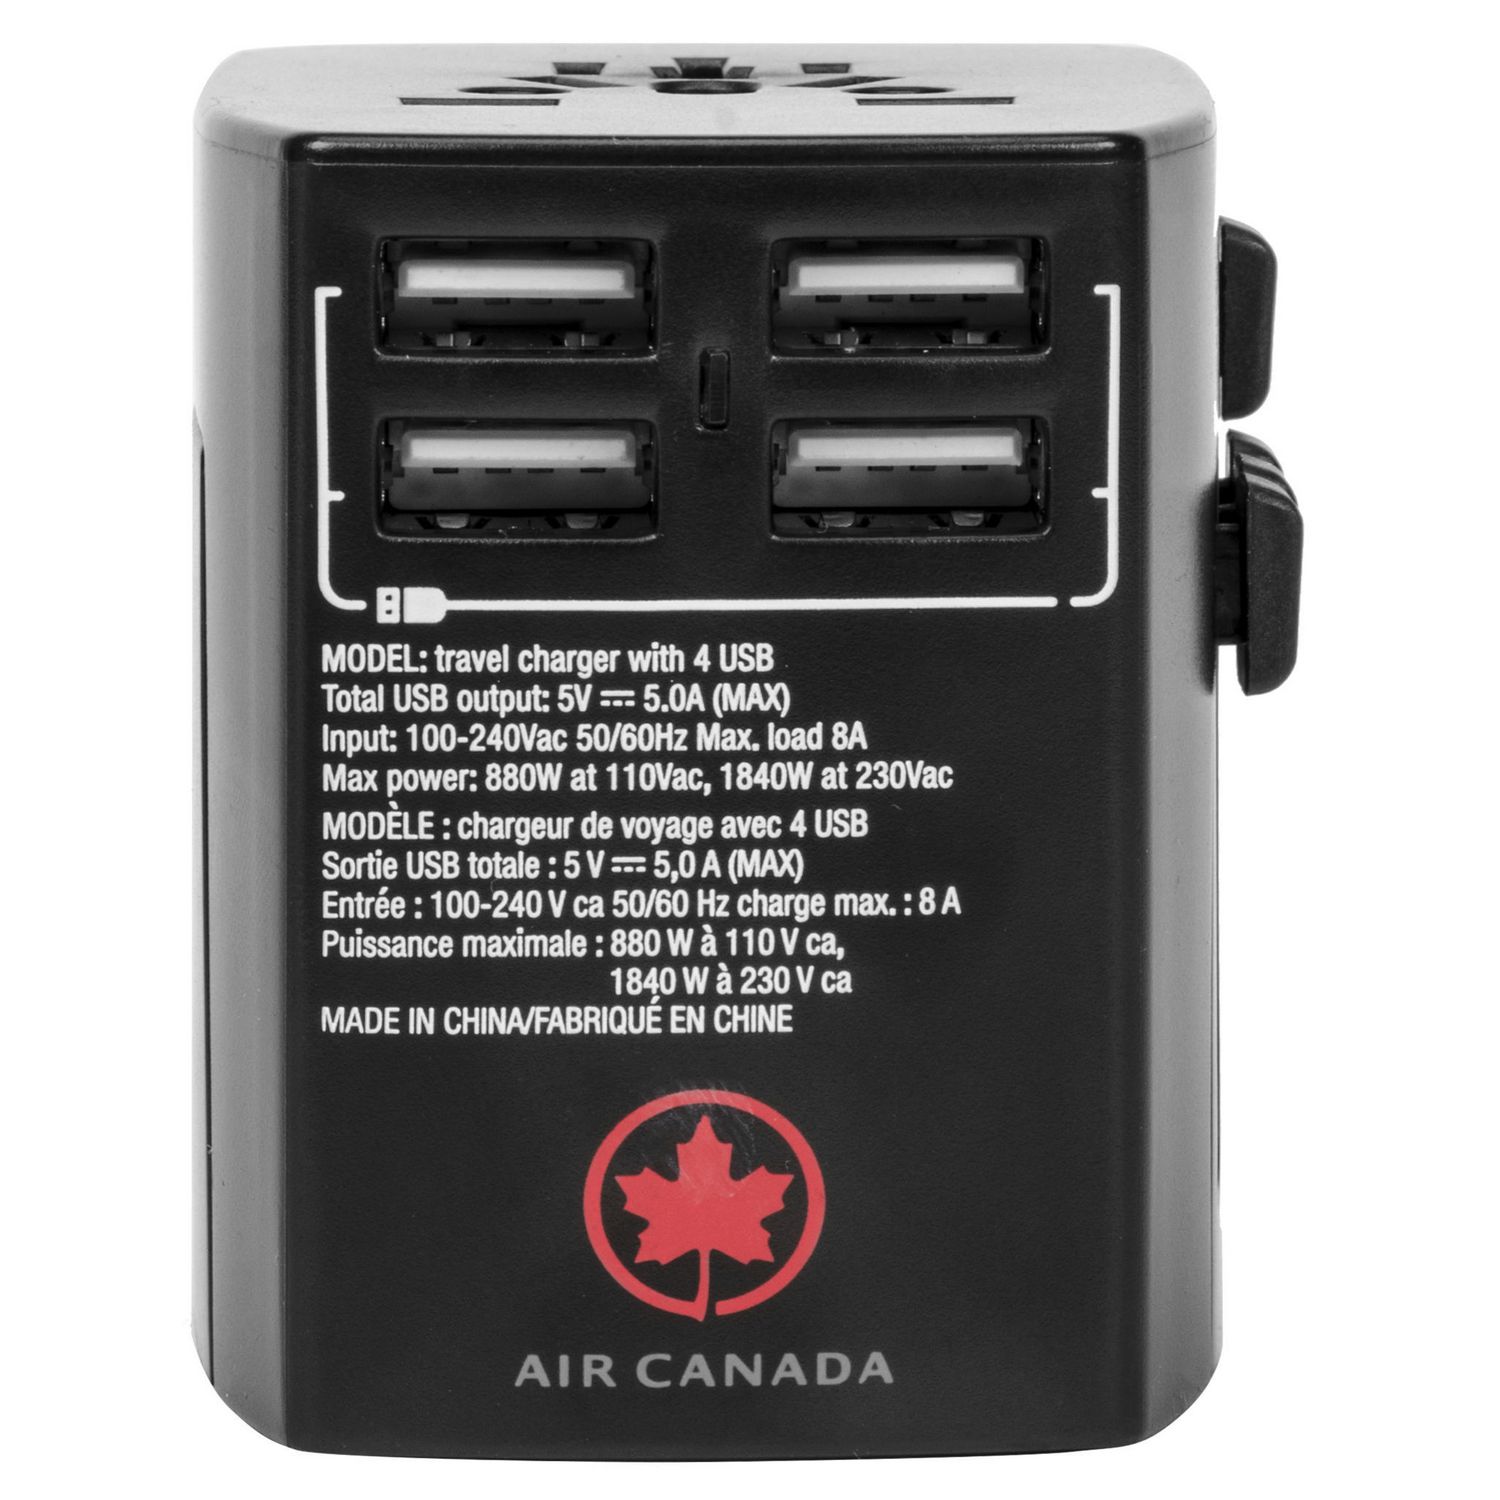 Ensemble de convertisseur / adaptateurs de Air Canada avec etui 7 pieces 